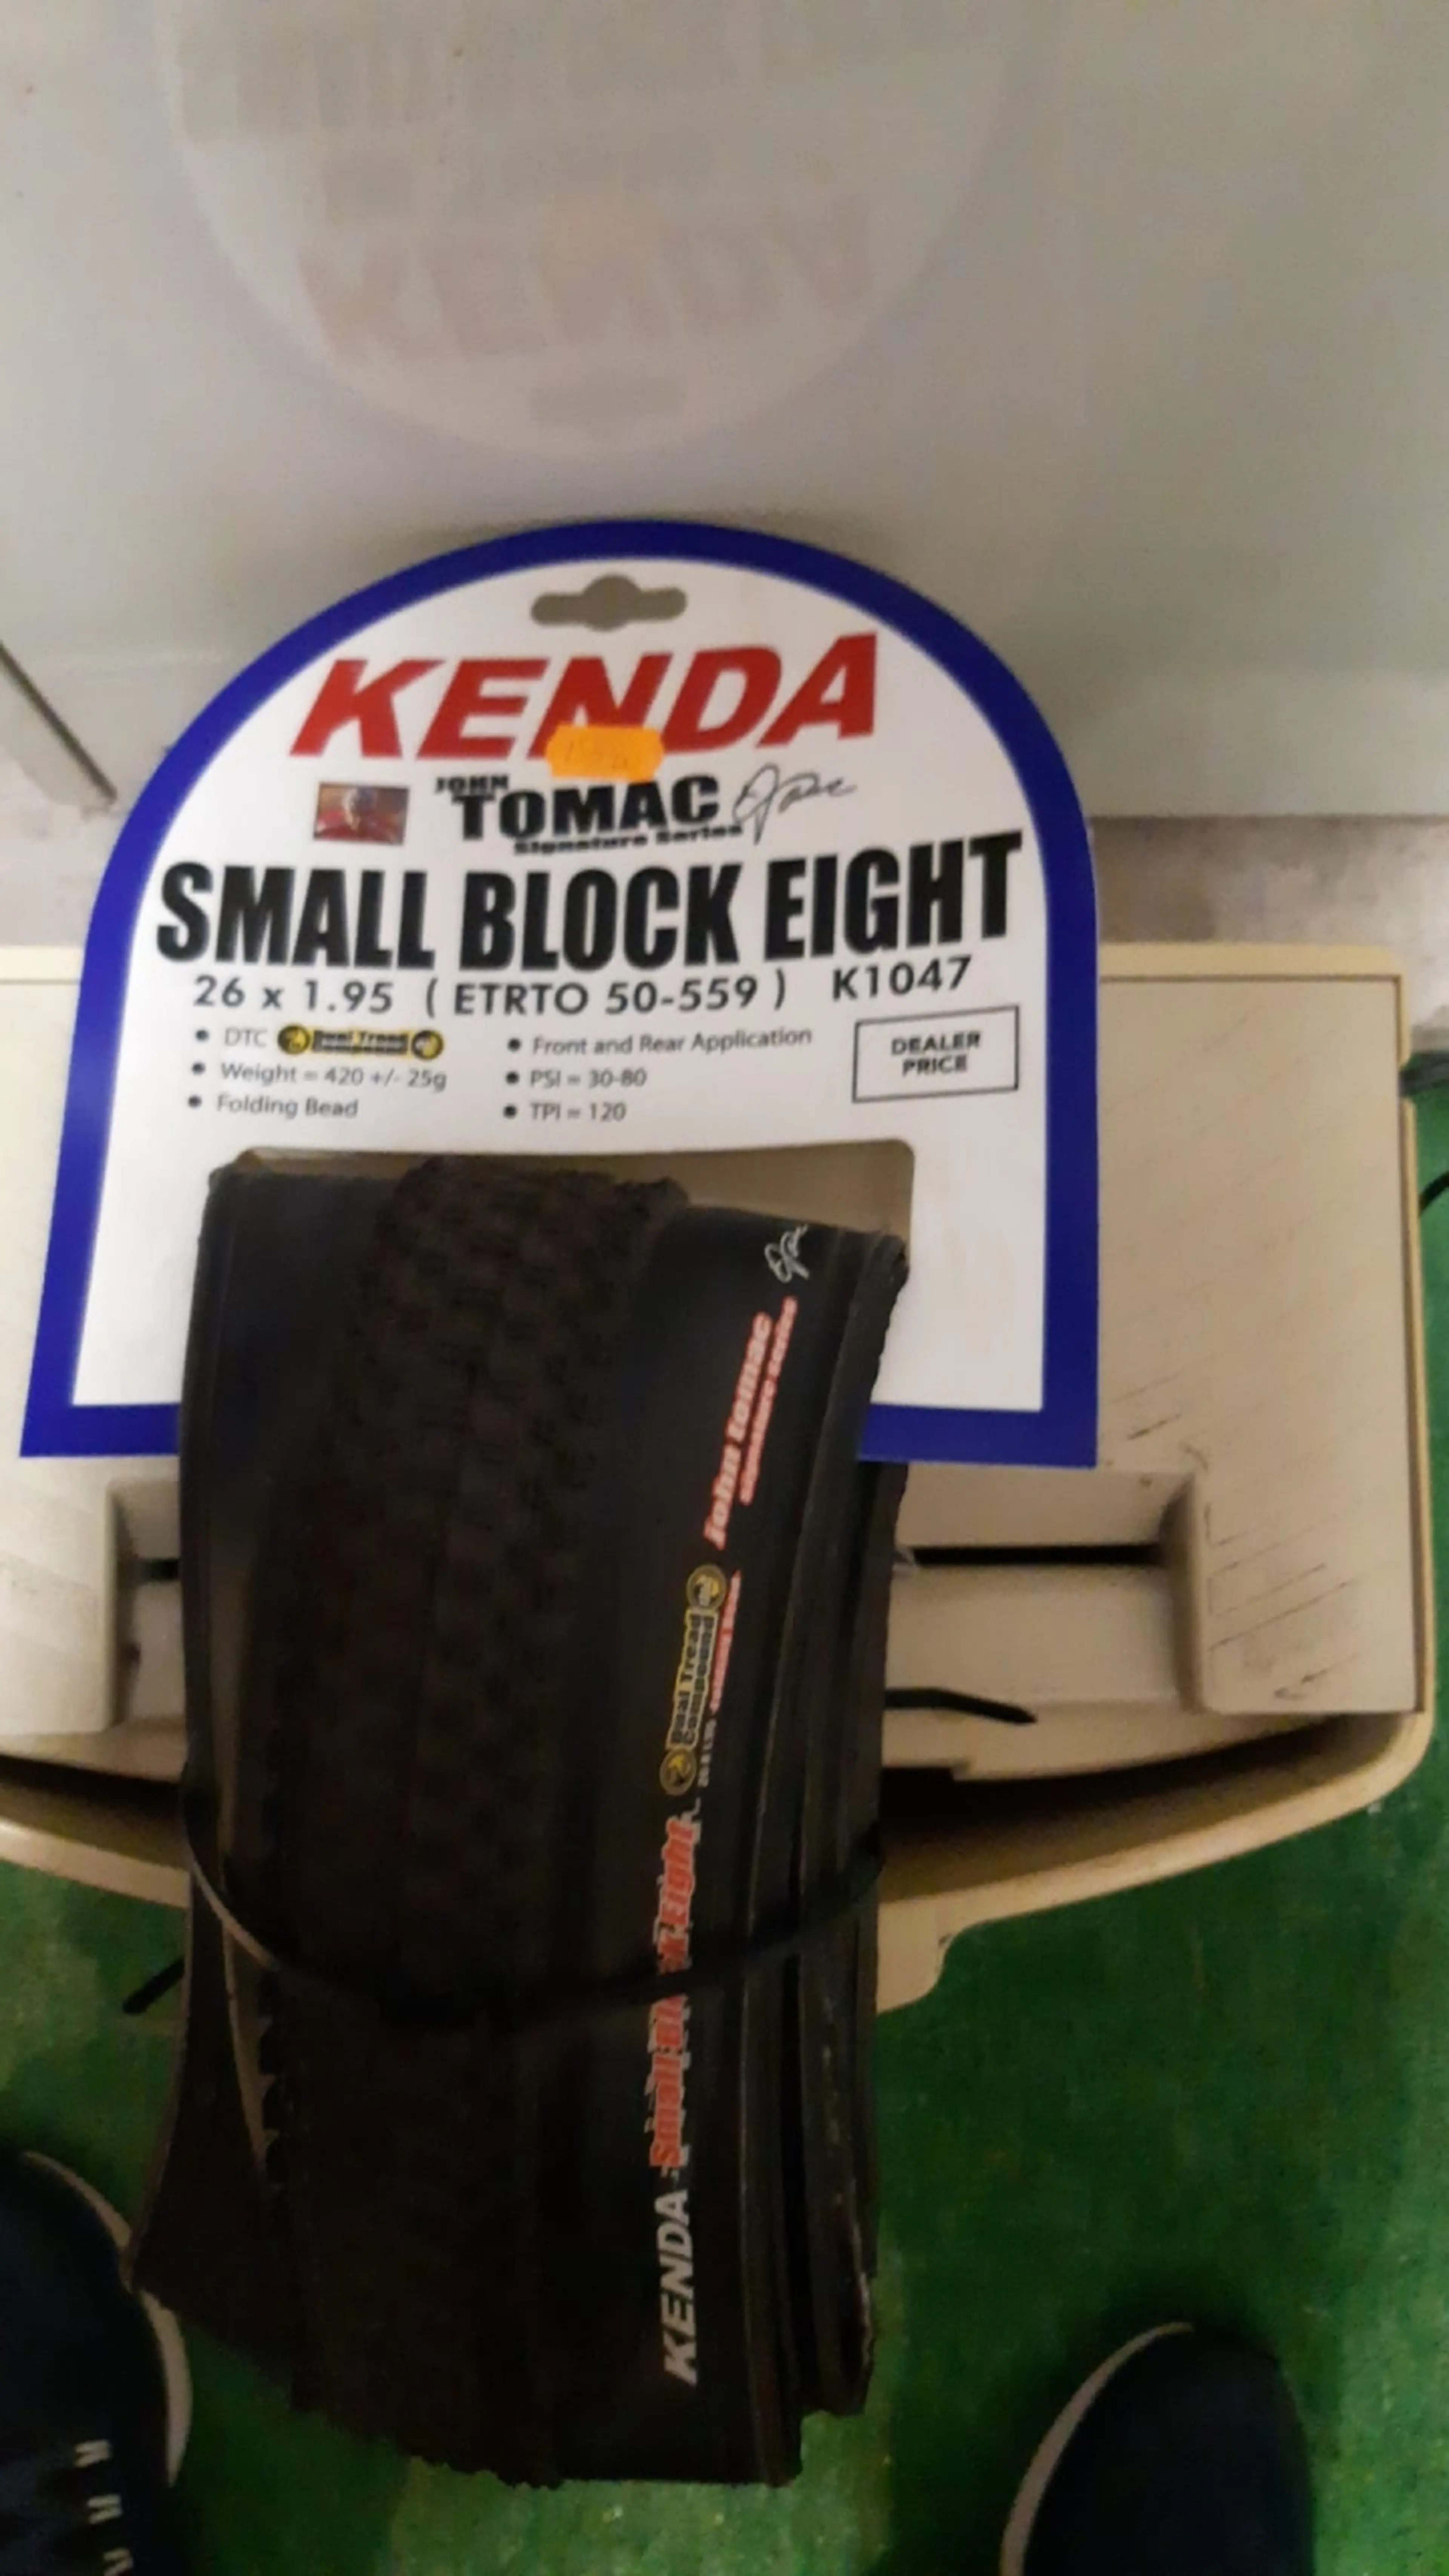 2. Kenda Small Block Eight Foldabil John Tomac Signature 26x1.95